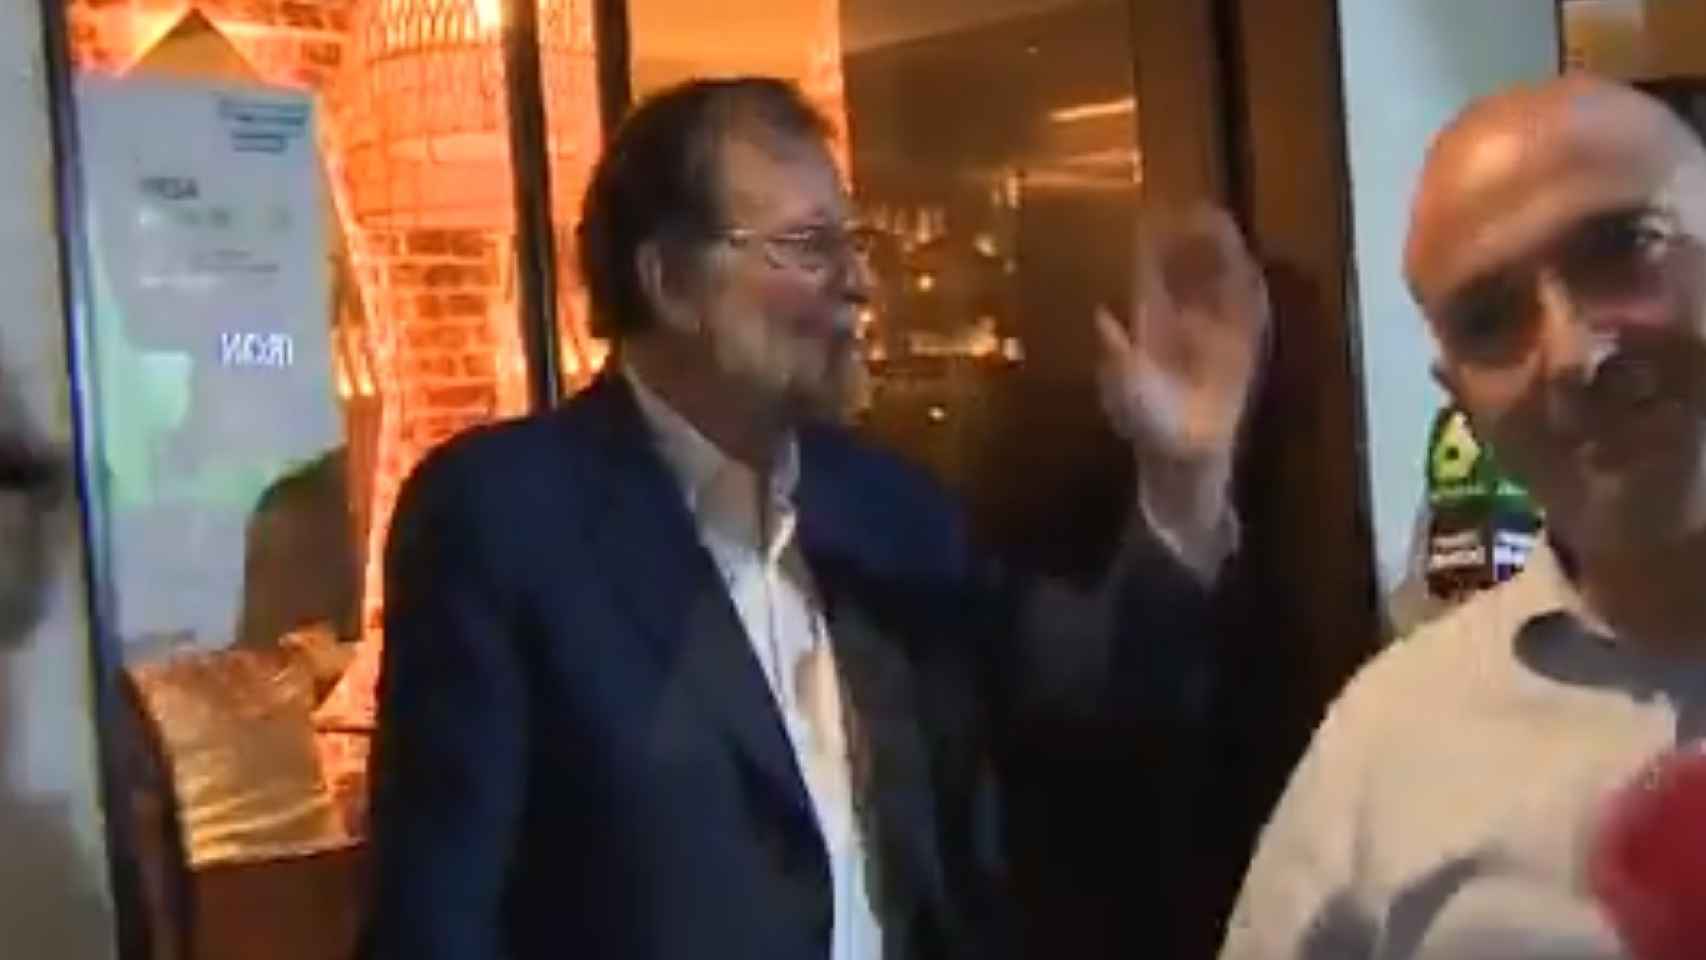 Rajoy a su salida del restaurante en el que se ha celebrado la comida.